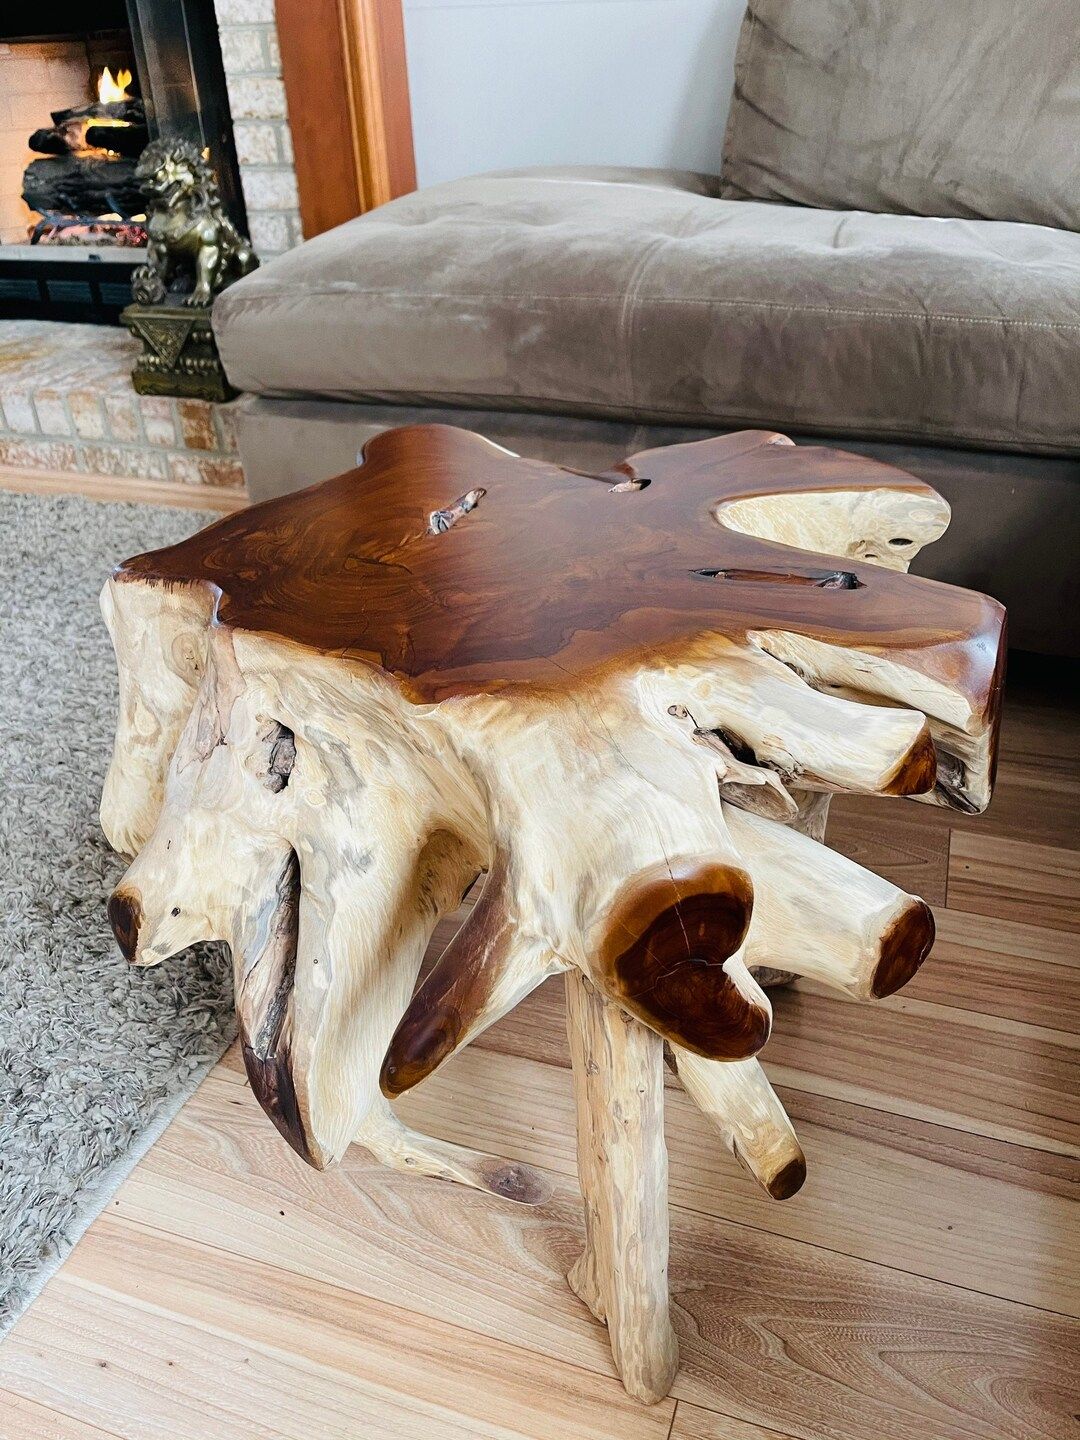 Teak wood end table